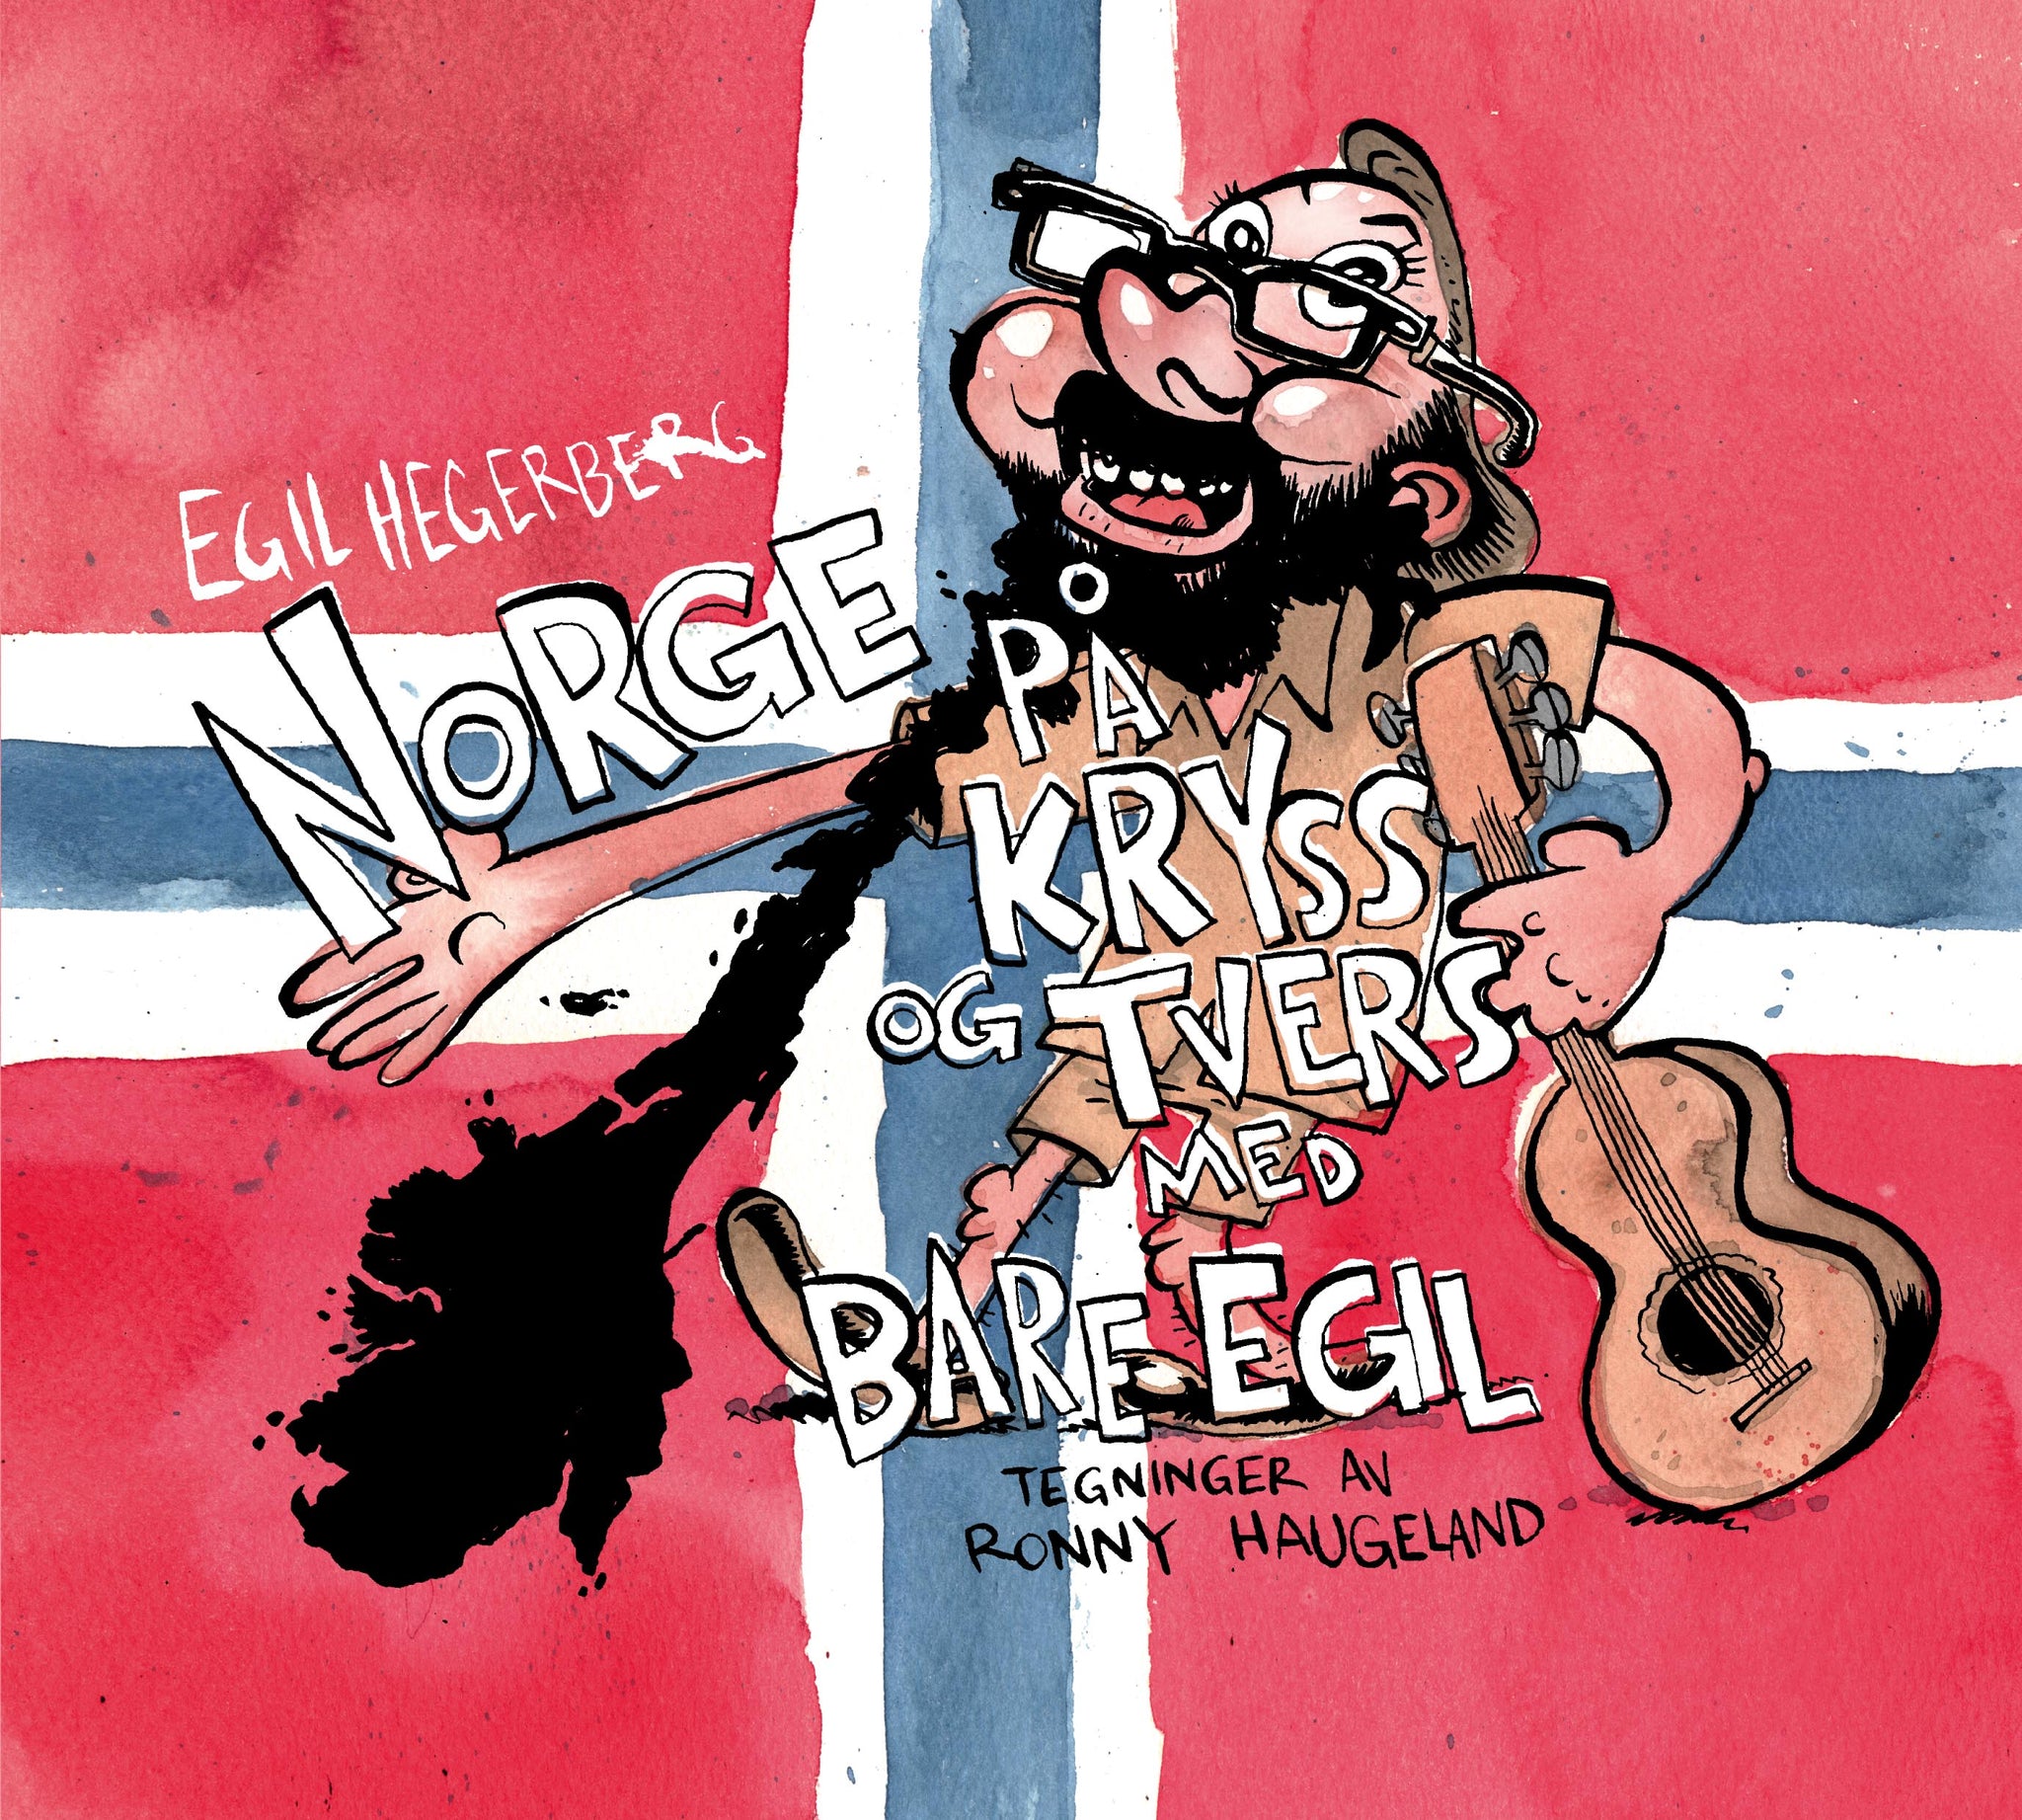 Egil Hegerberg: Norge på kryss og tvers med Bare Egil. Tegninger av Ronny Haugeland.